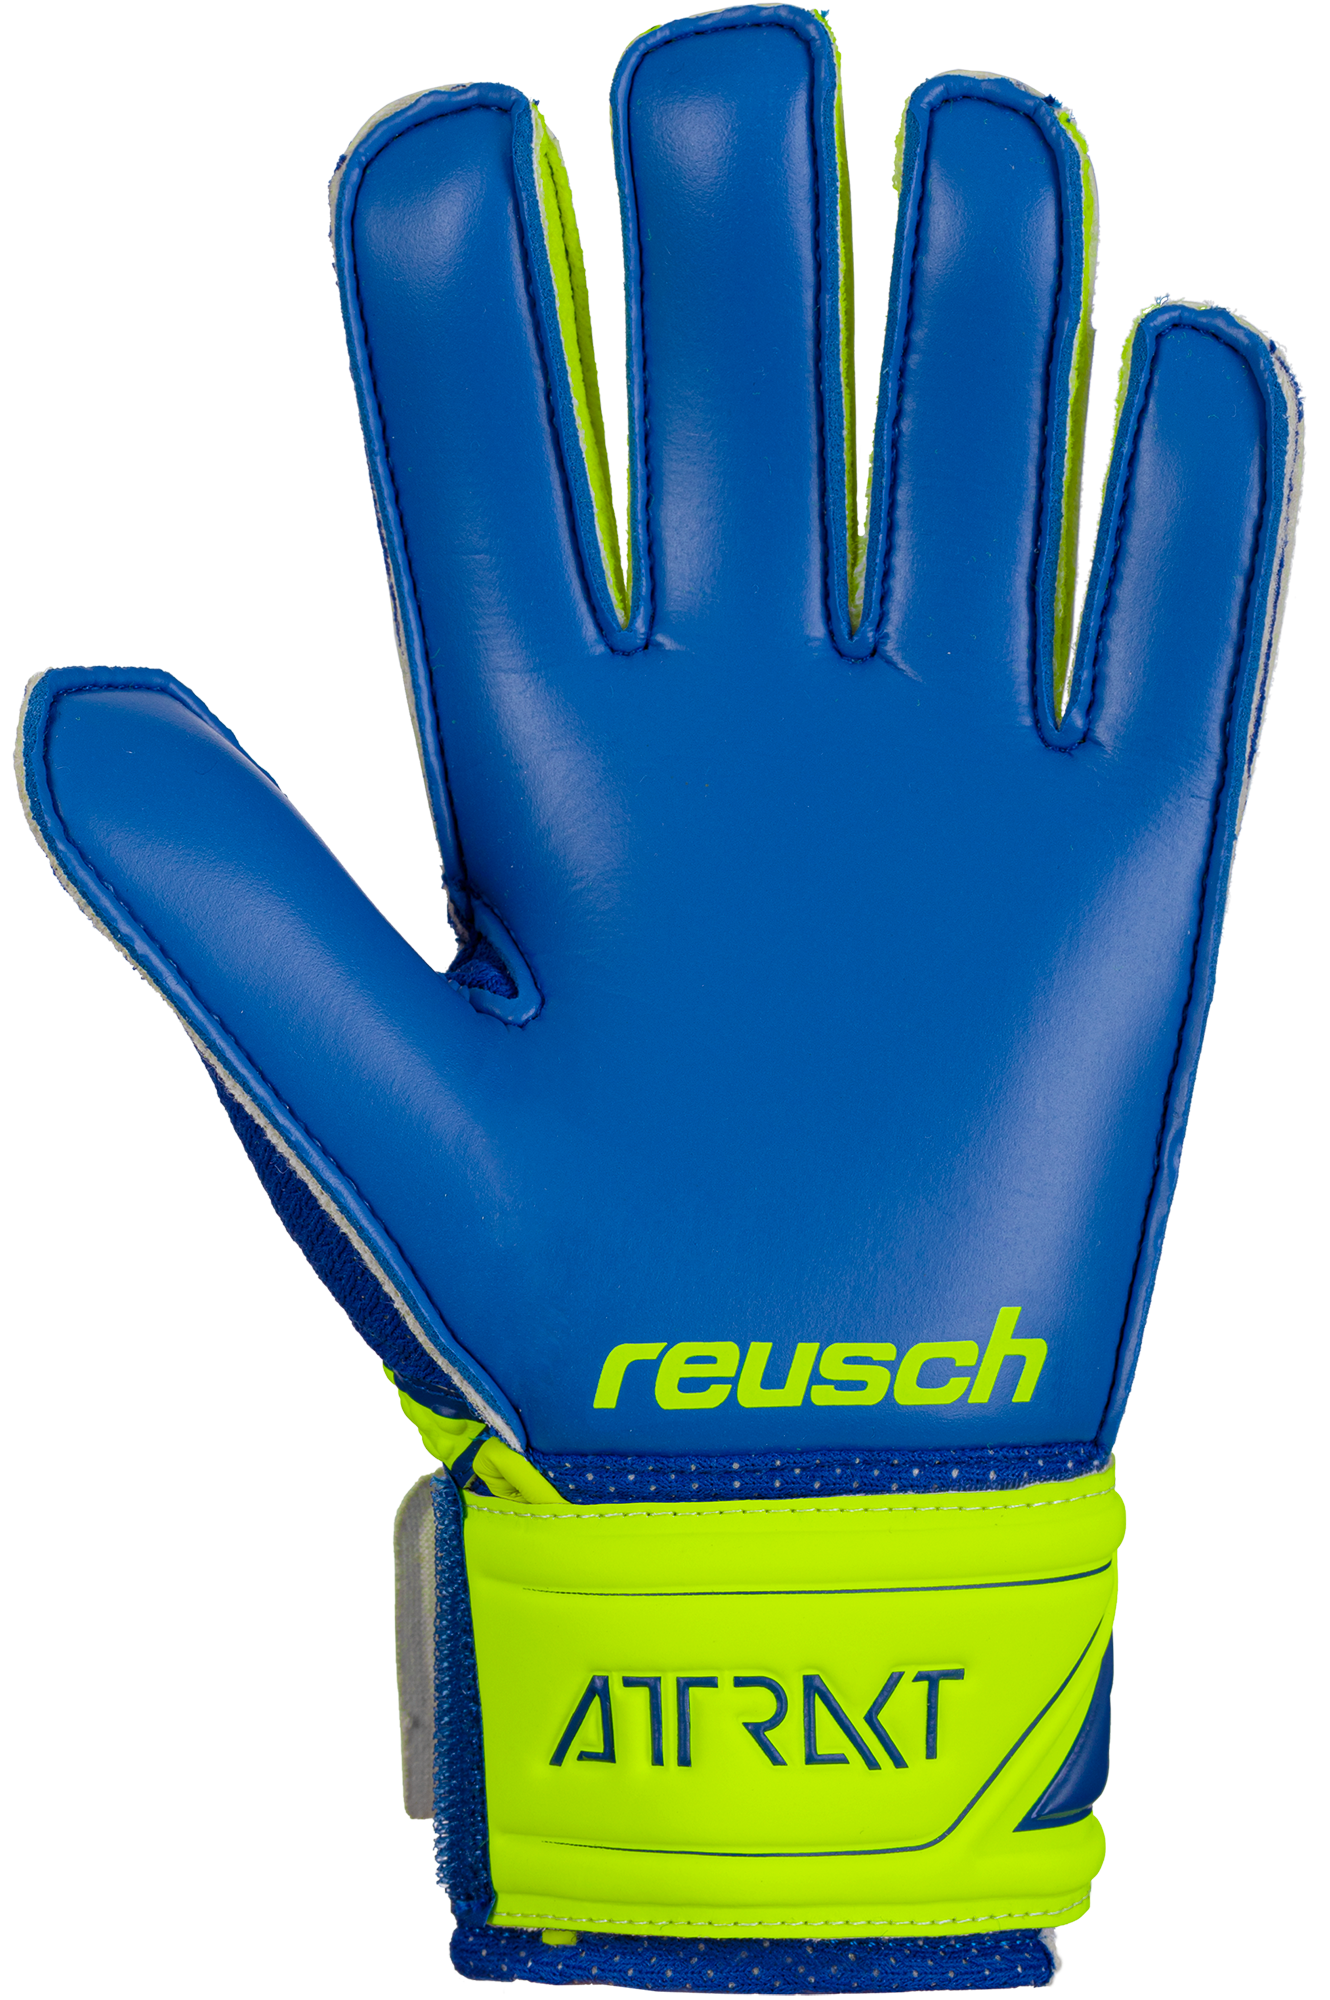 Reusch Attrakt RG Open Cuff Junior  Goalkeeper Gloves 